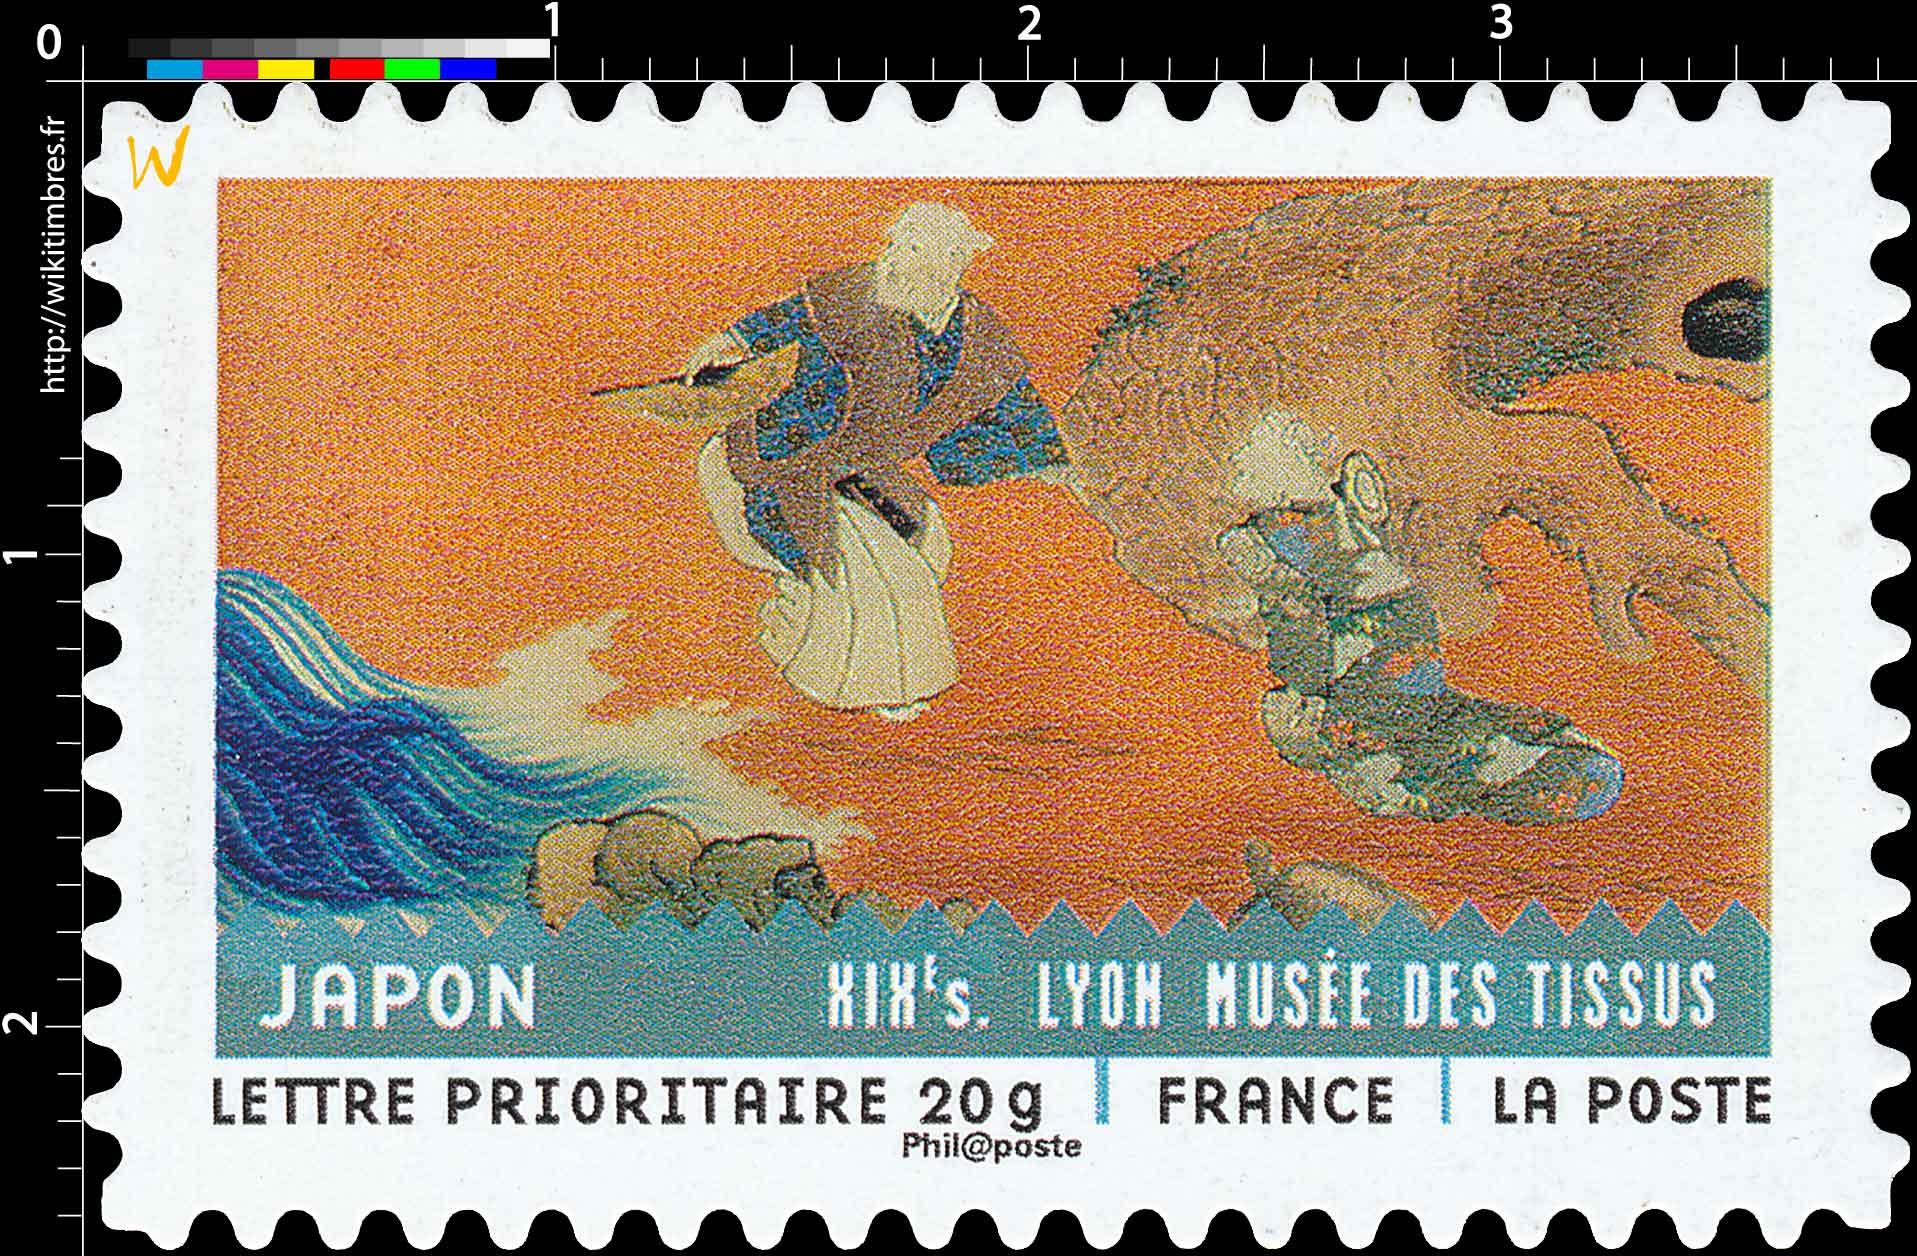 JAPON XIXe s. LYON MUSÉE DES TISSUS